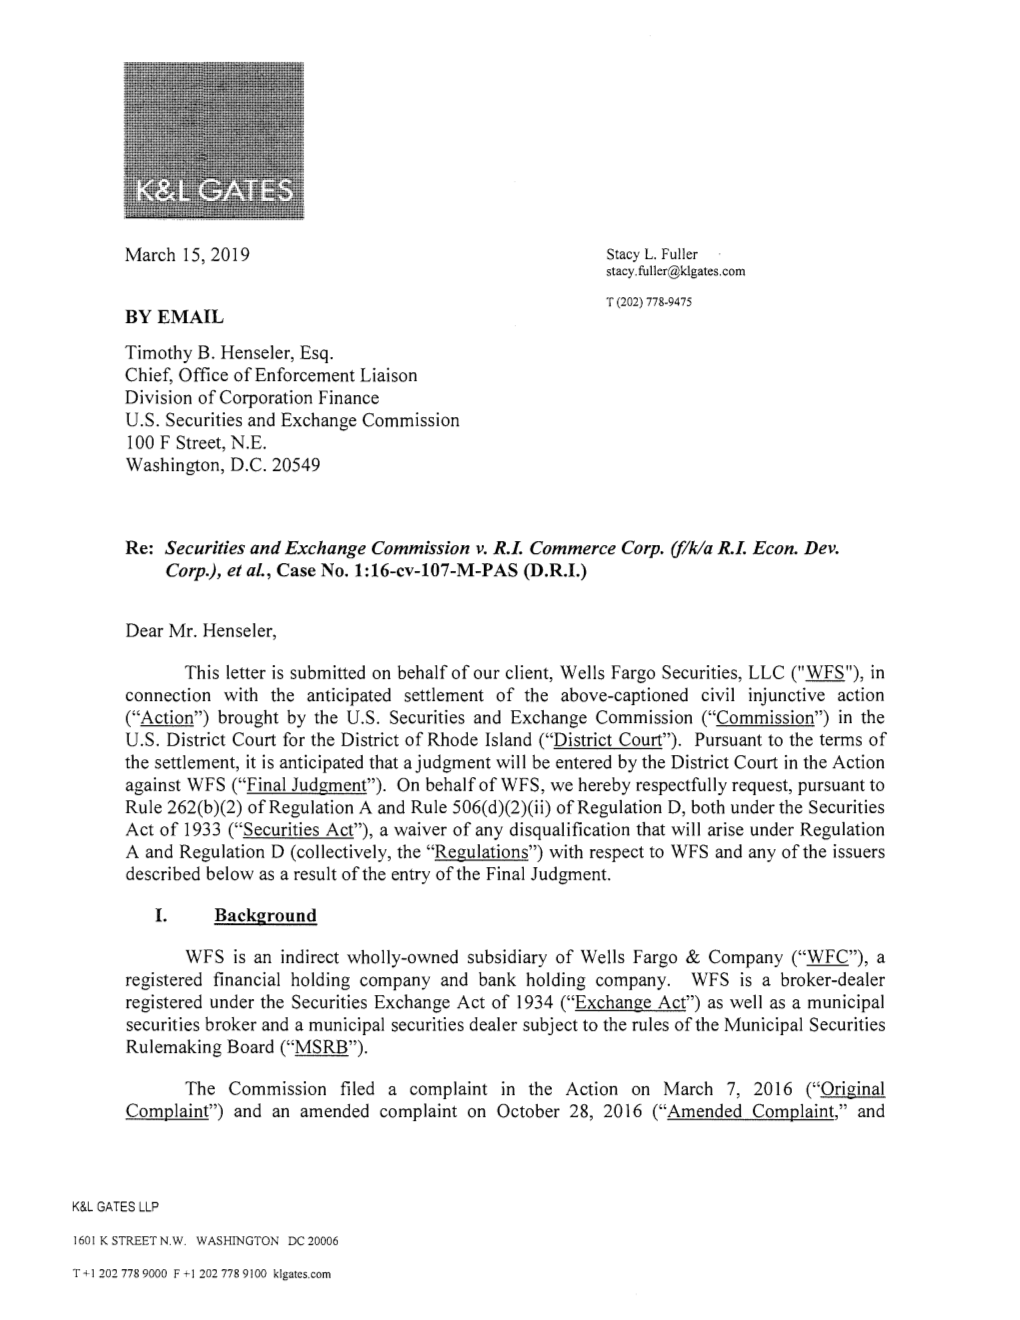 Incoming Letter: Wells Fargo Securities